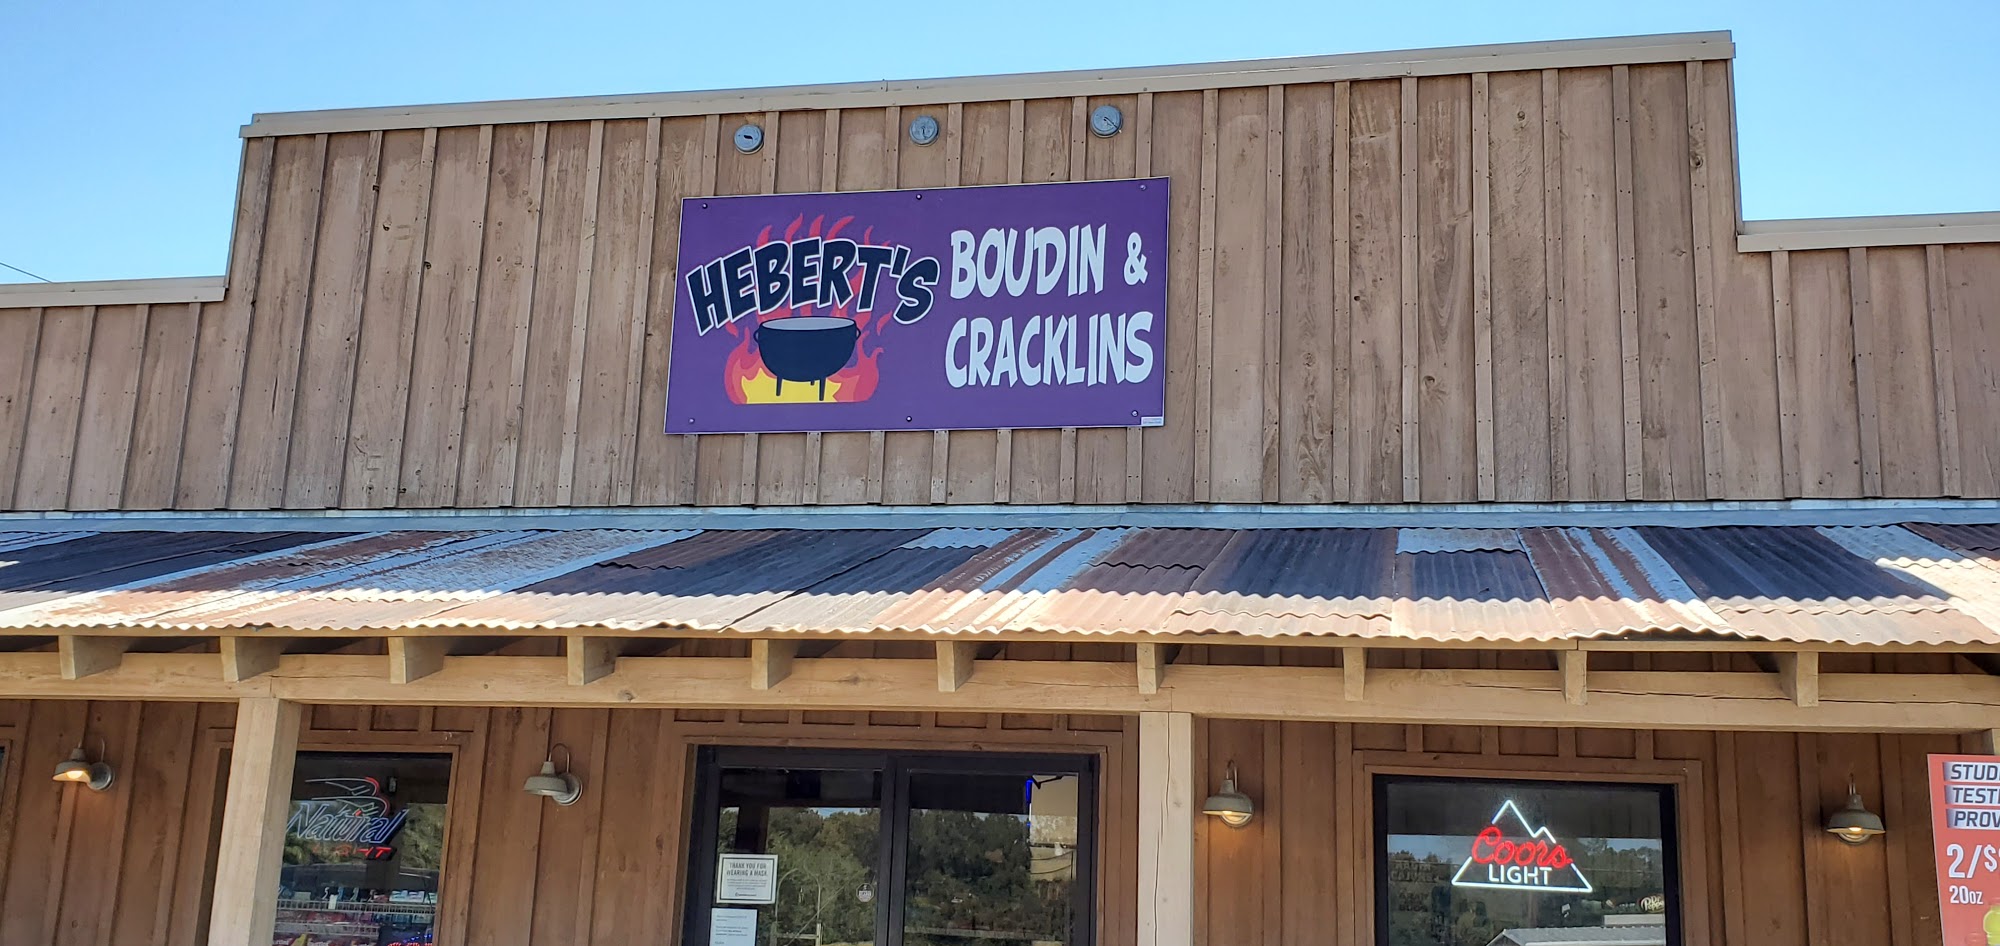 Hebert's Boudin & Cracklins